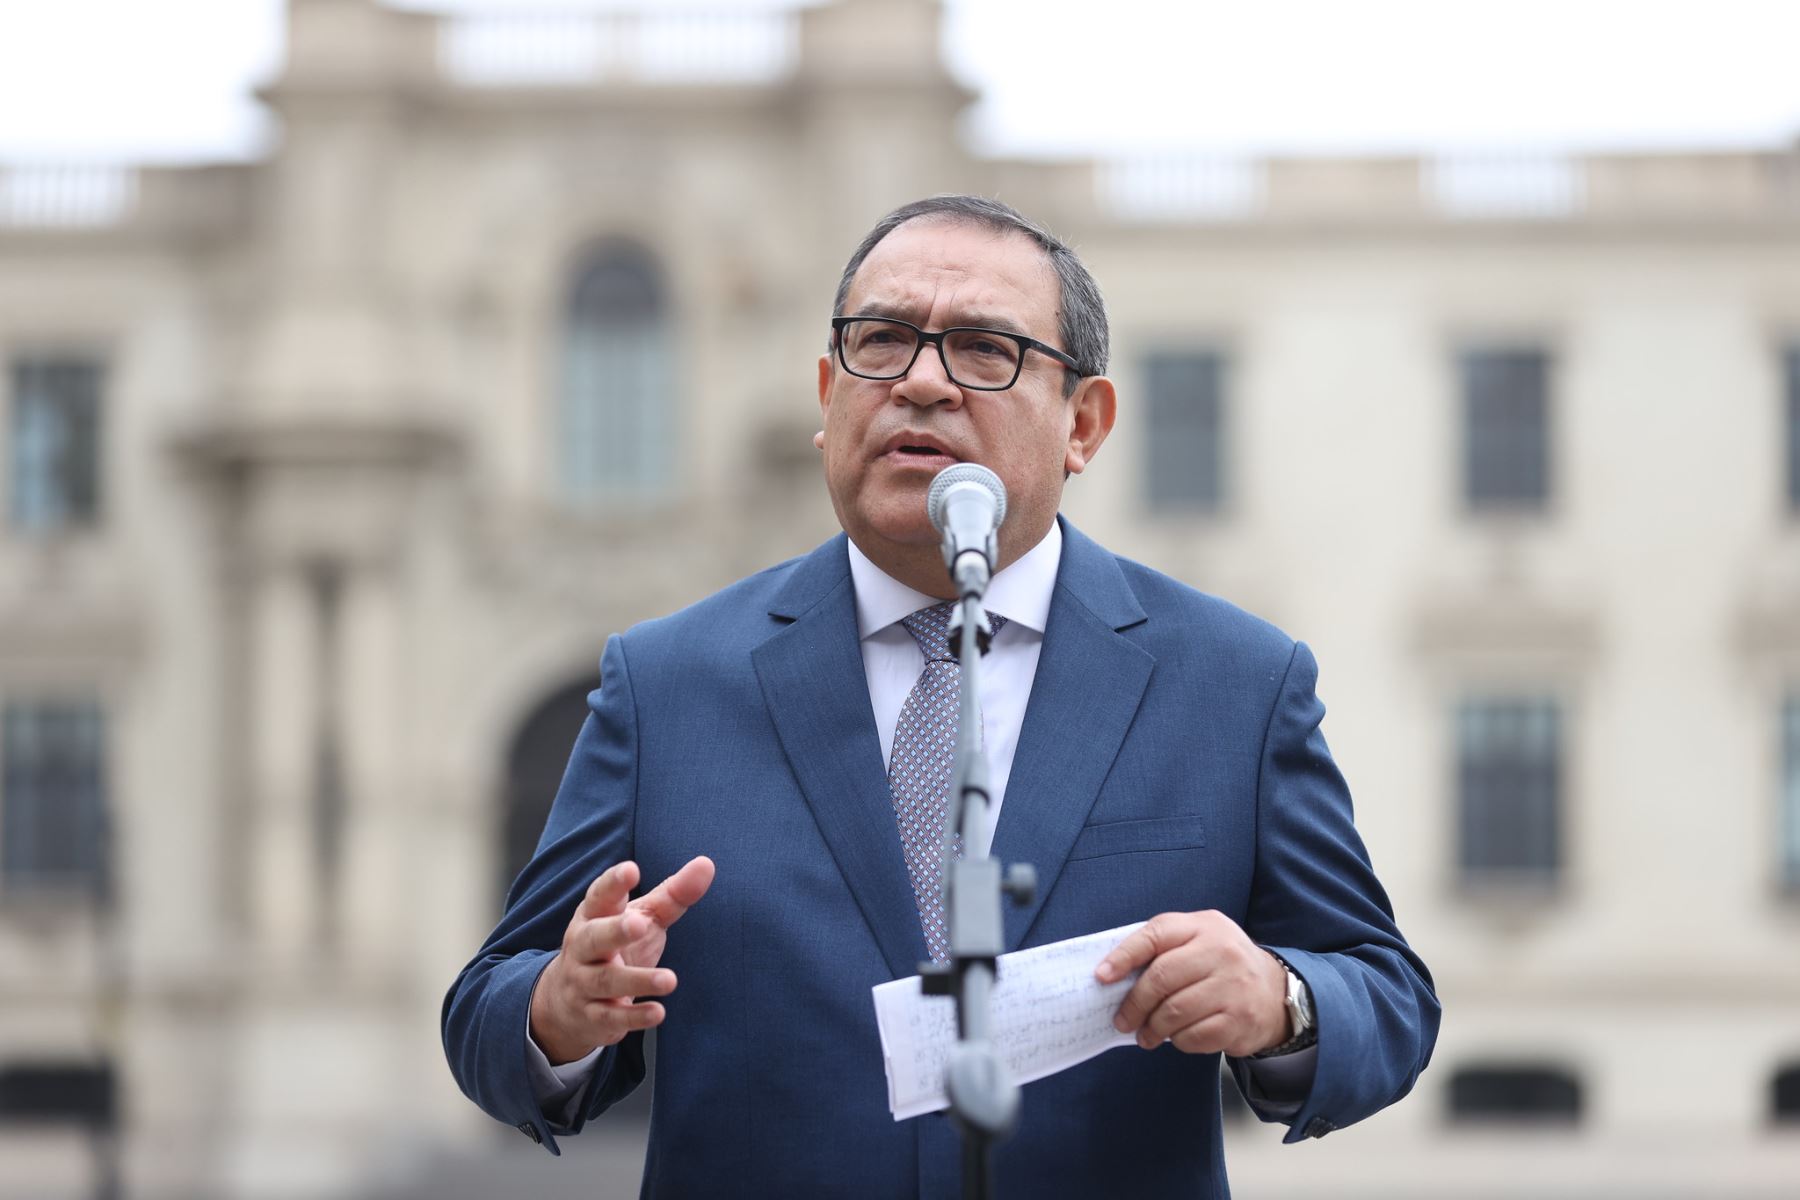 El jefe del gabinete Ministerial, Alberto Otárola, brinda declaraciones a la prensa nacional e internacional tras Consejo de Ministros.
Foto: PCM